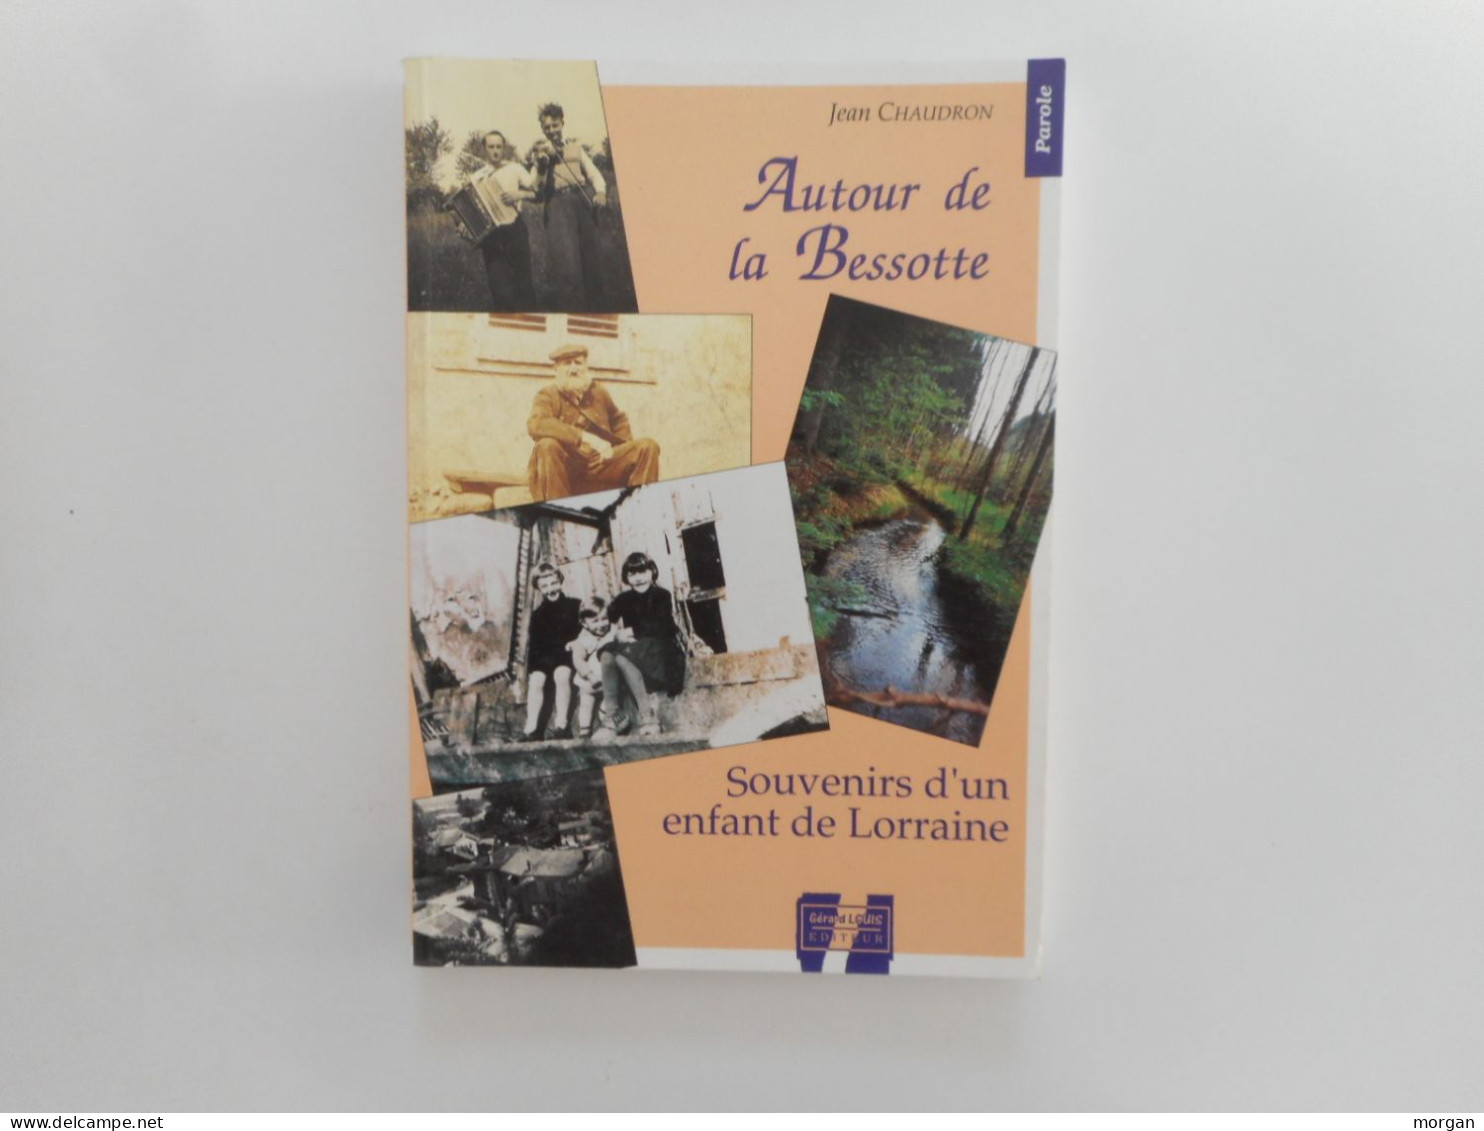 LORRAINE, MEURTHE ET MOSELLE - BADMENIL, AUTOUR DE LA BESSOTTE, 1994, JEAN CHAUDRON, SOUVENIRS D'UN ENFANT DE LORRAINE - Lorraine - Vosges